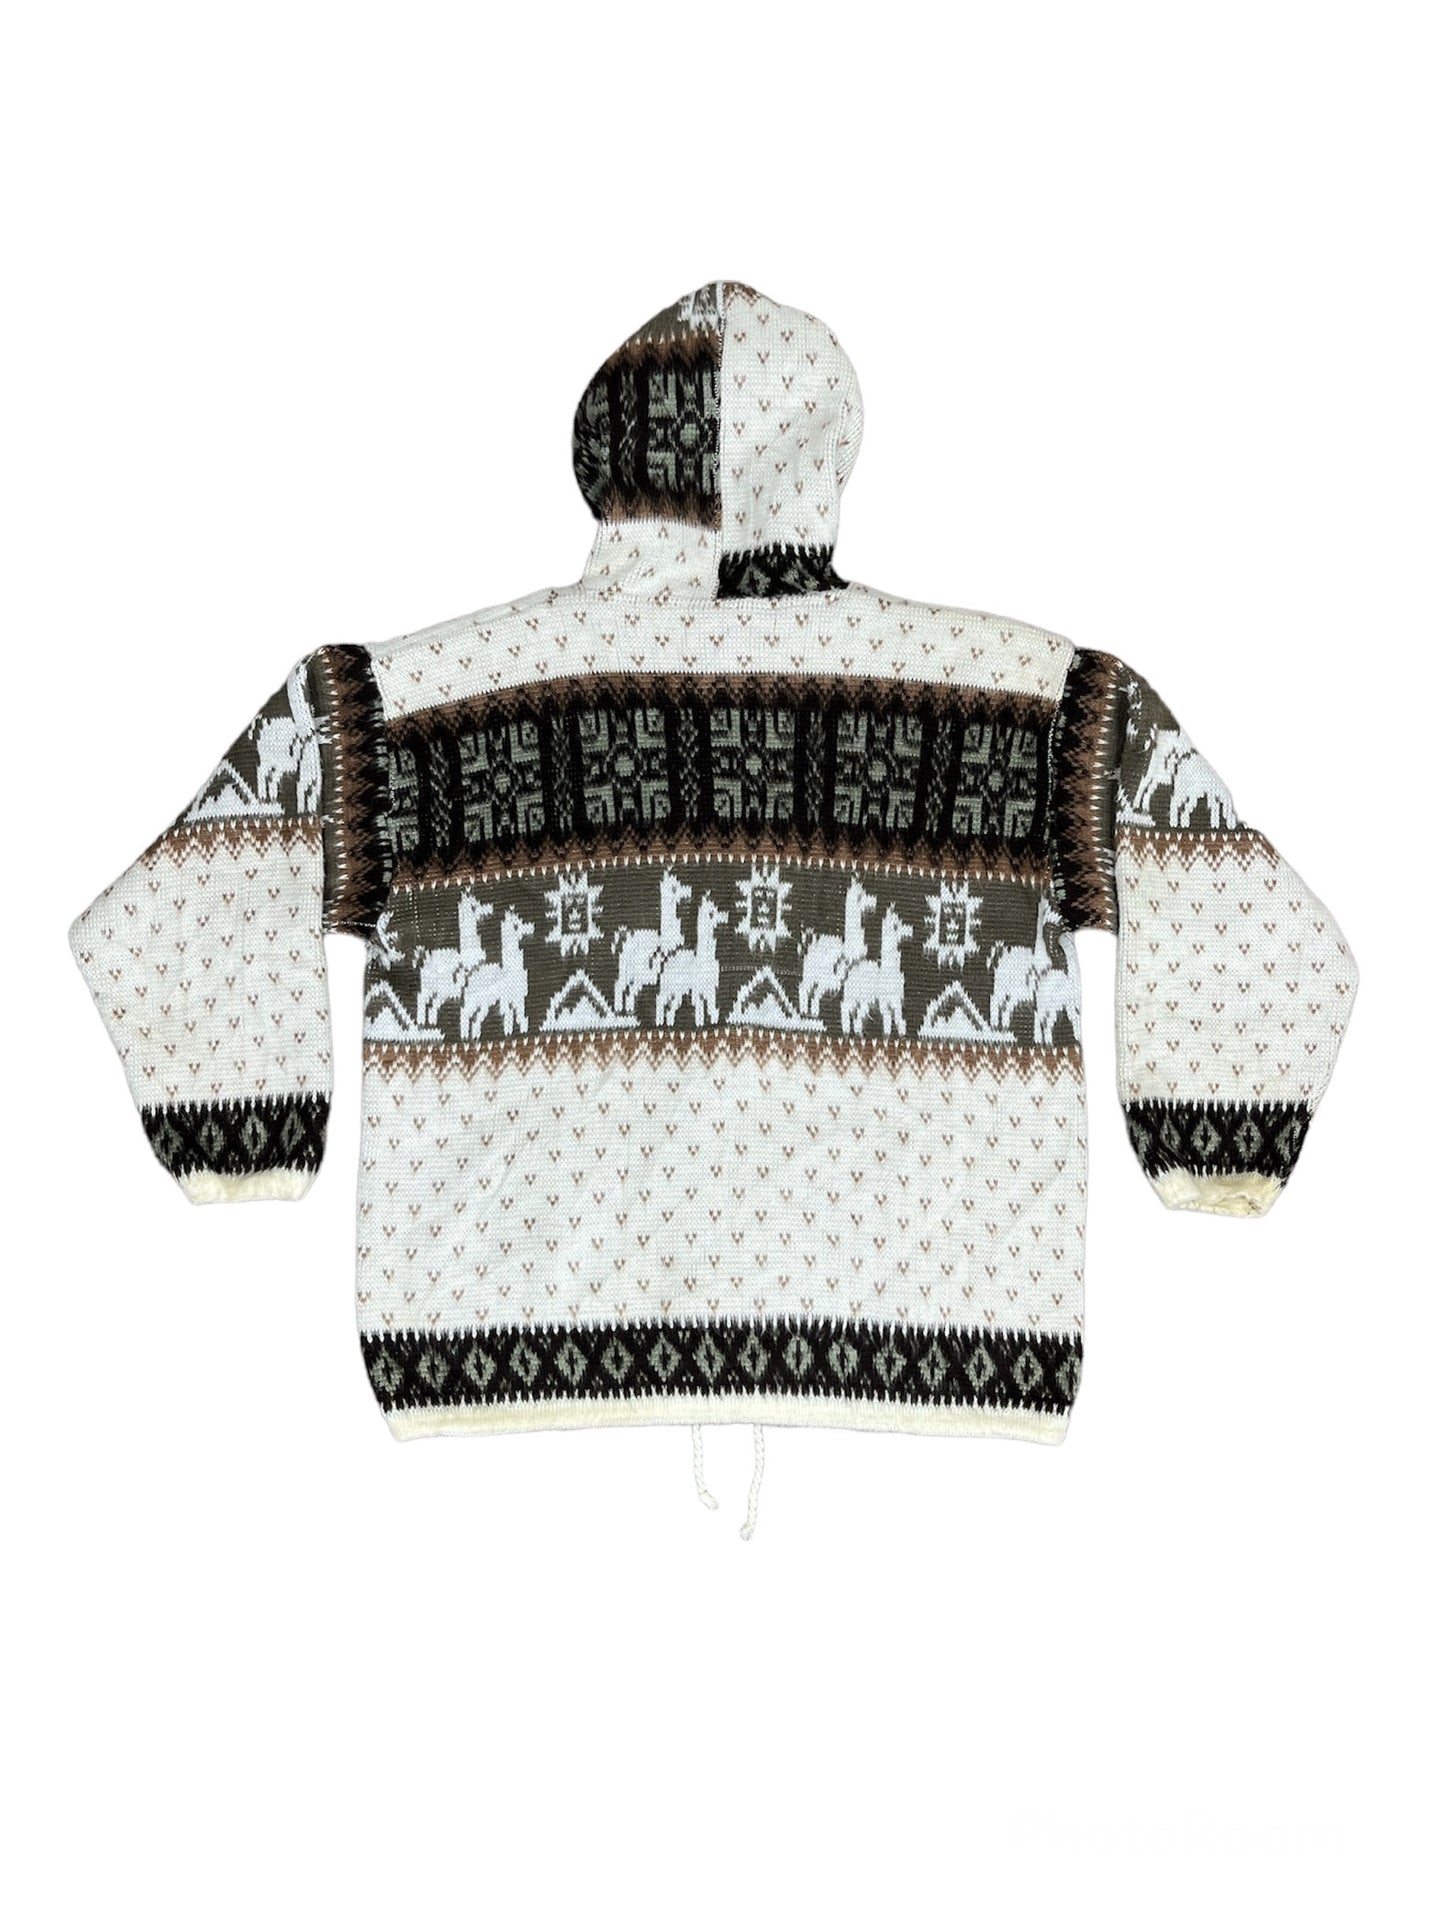 Vintage 90’s Ruminahui Wool Jacket - Large